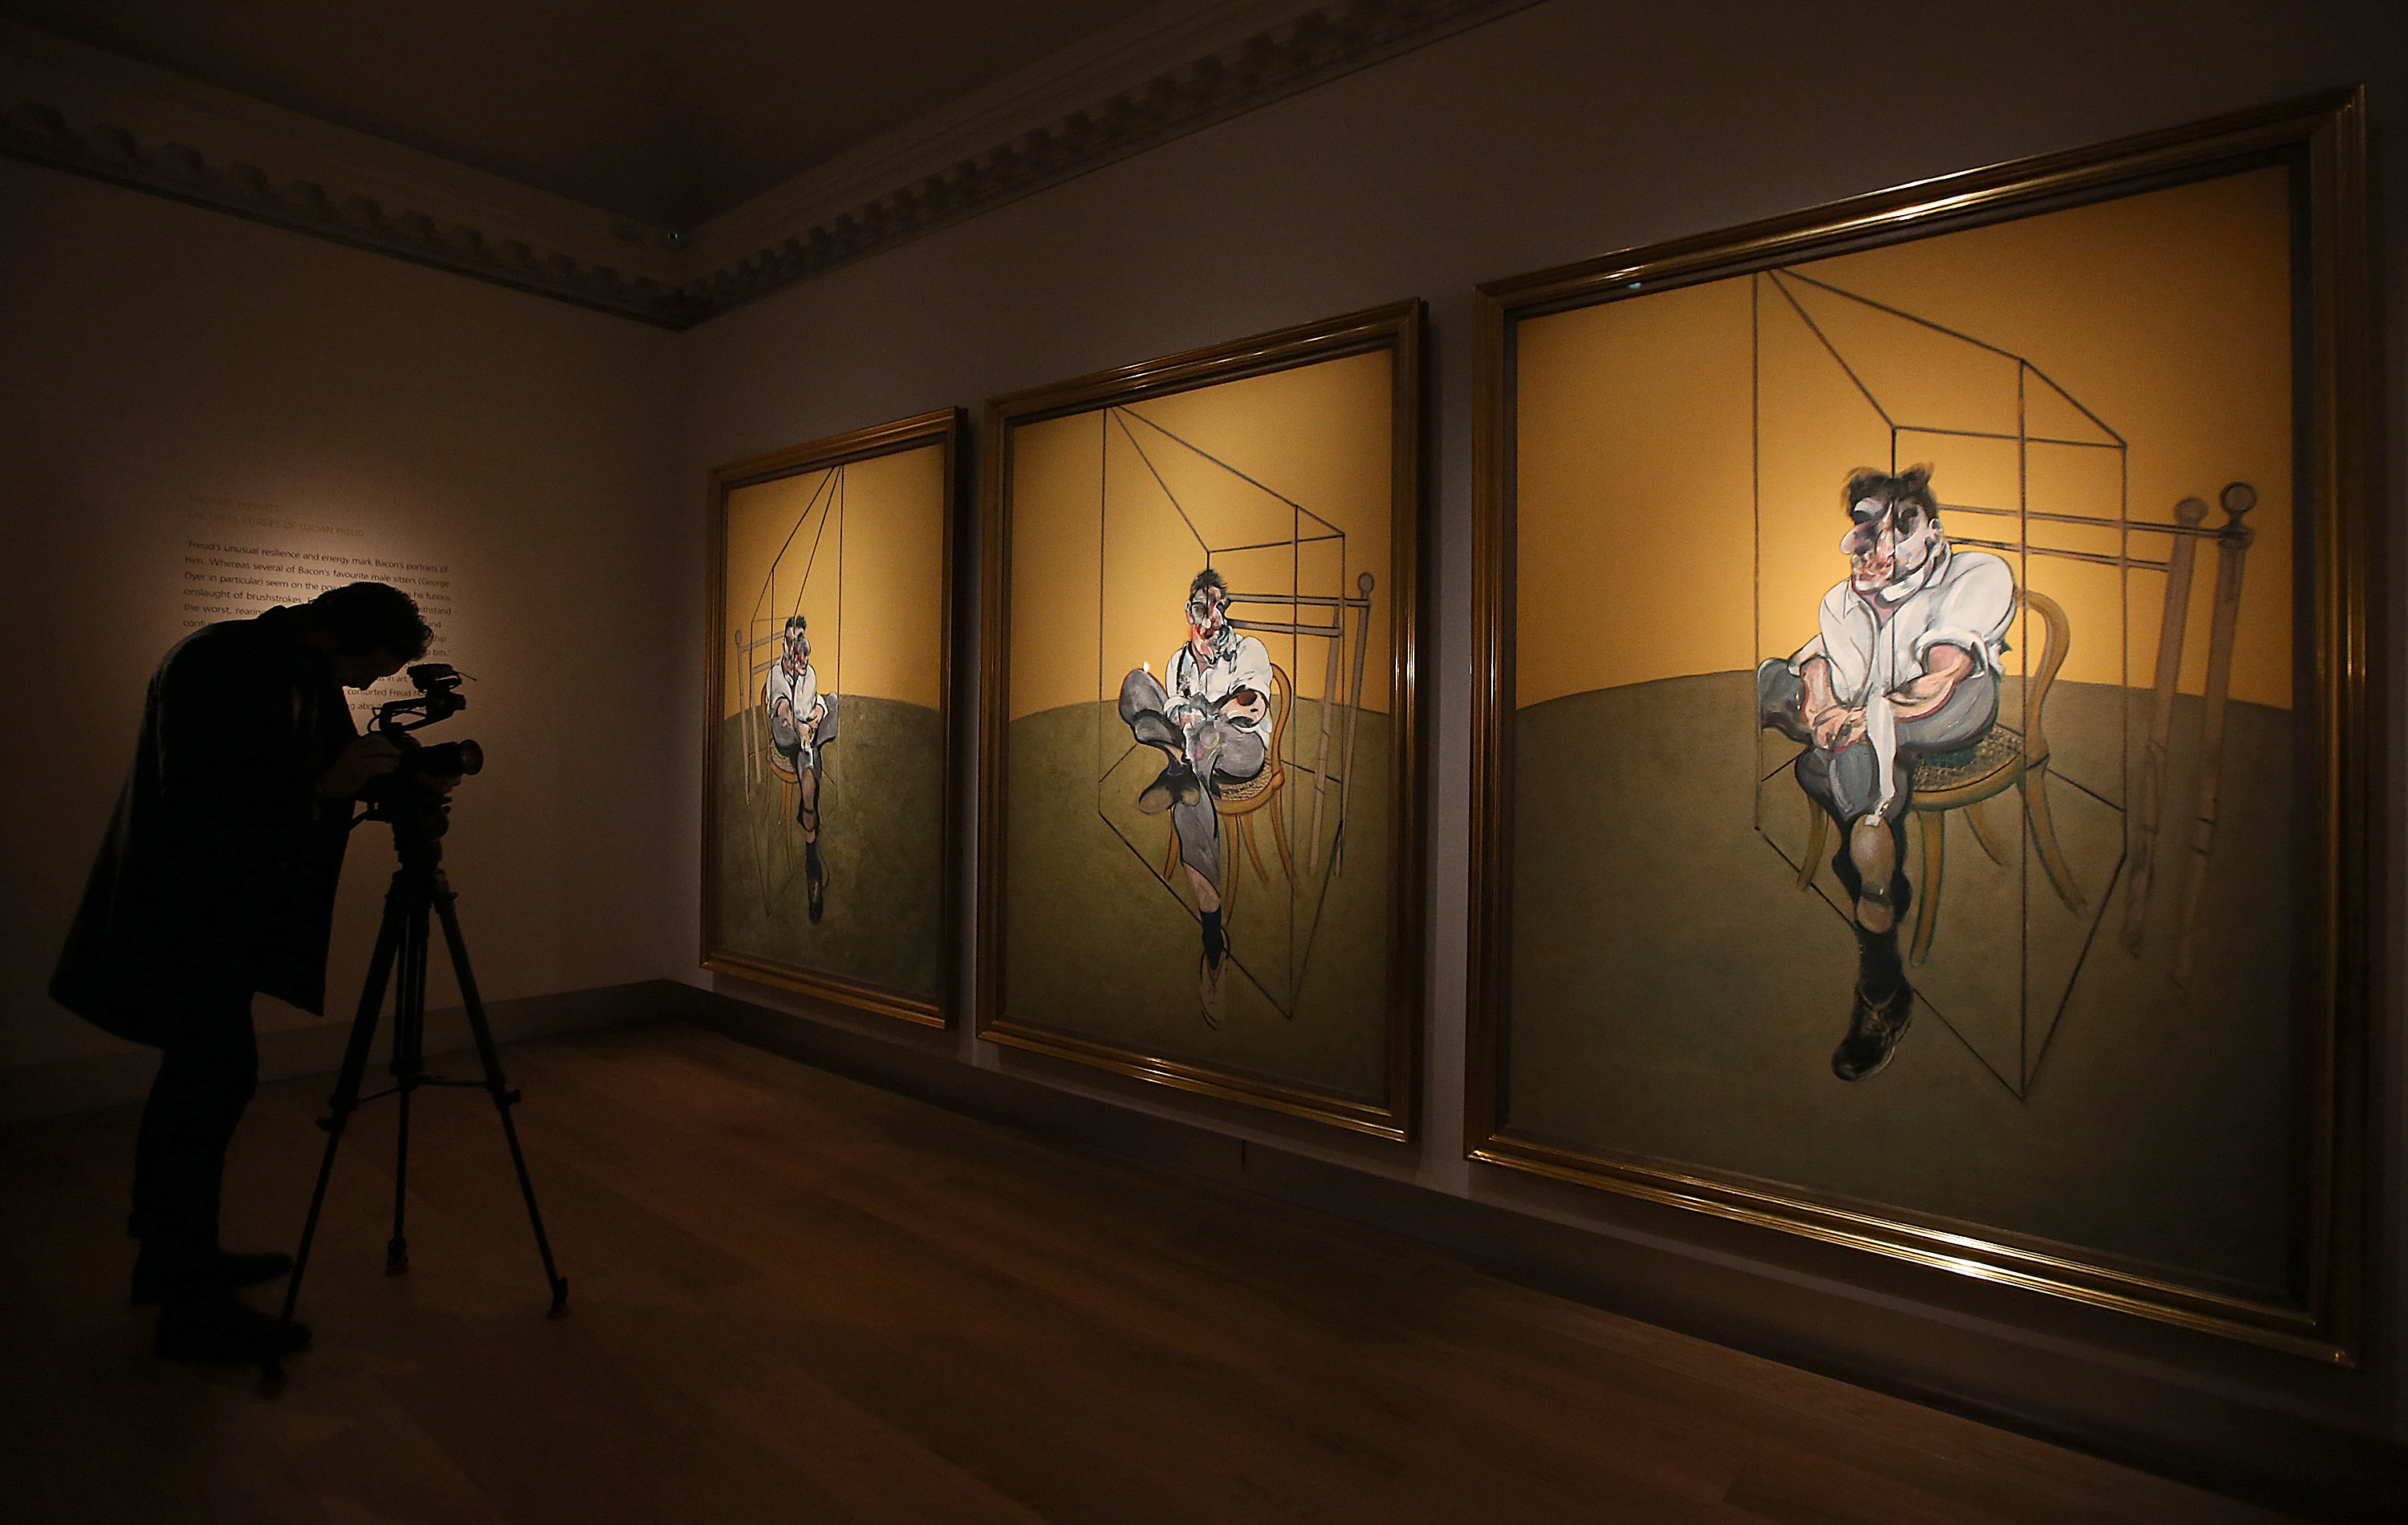 Едното от най-известните произведения на Франсис Бейкън триптих ”Три студии на Лушън Фройд”